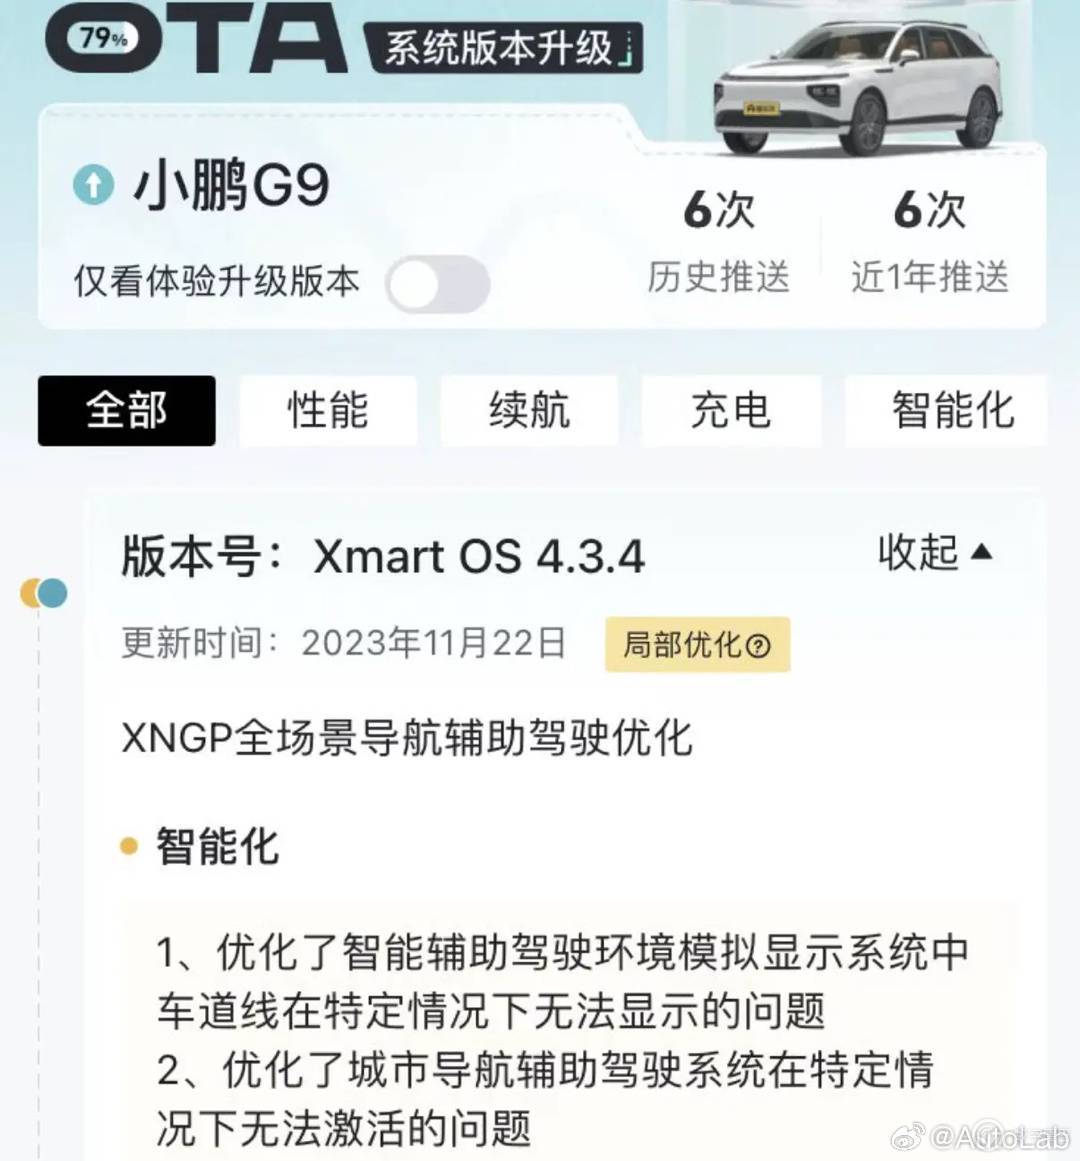 【爱车基地】小鹏 G9 OTA 升级 Xmart OS 4.3.4，XNGP 全场景导航辅助驾驶优化-第2张